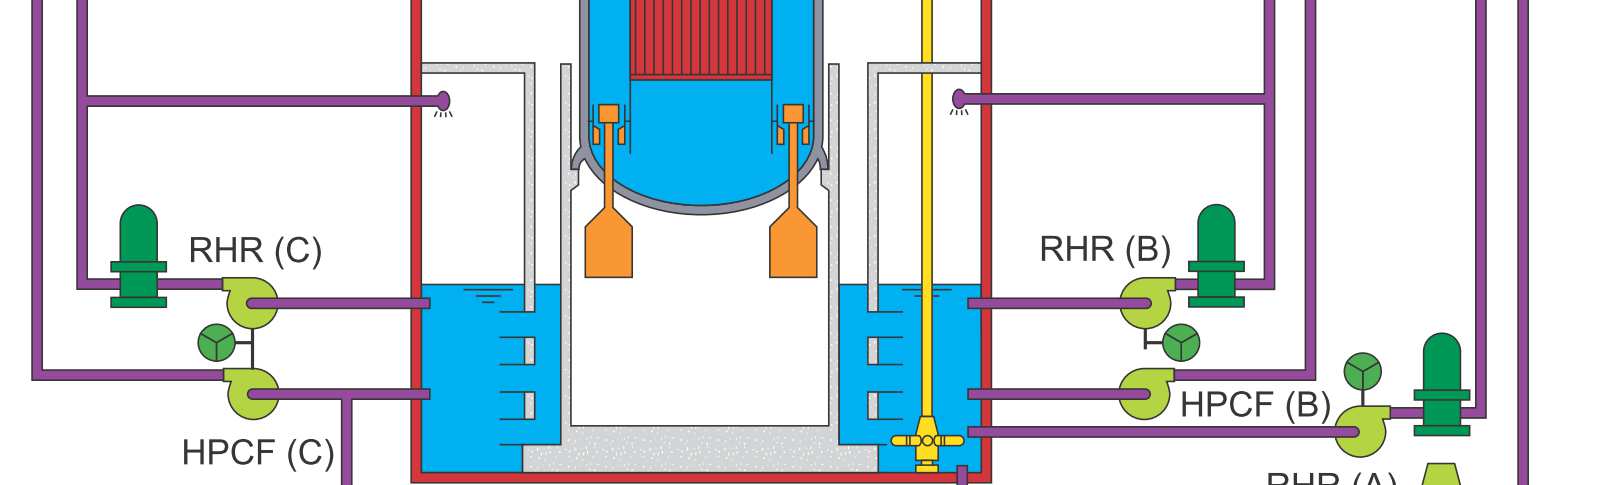 ABWR finommotoros SZBV hajtás Standard BWR hidraulikus hajtás: Locking Piston CRD (LPCRD) hidraulikus betolás és kihúzás, scram Körülményes kiszerelés Leállásonként mintegy húsz SZBV hajtást kell